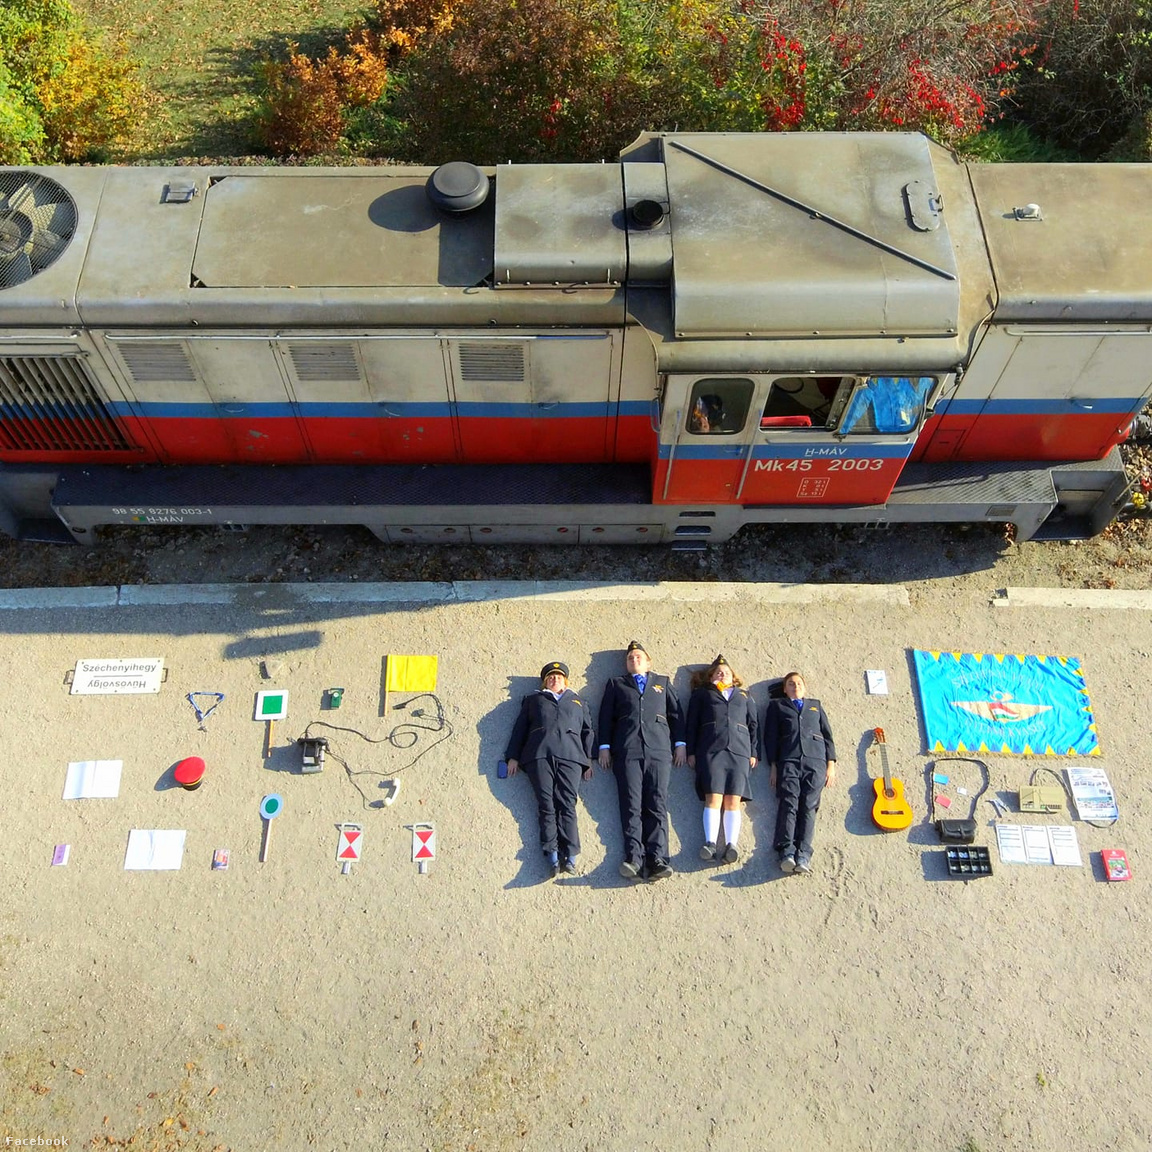 A Széchenyi-hegyi Gyermekvasút október 25-i fotója négy gyermekvasutassal, egy Mk45 sorozatú kisvasúti dízelmozdonnyal, piros tányérsapkával, dobozgitárral, kalauztáskával, nappali vonatindító jelzőtárcsával felér egy kisebb cukiságbombával.